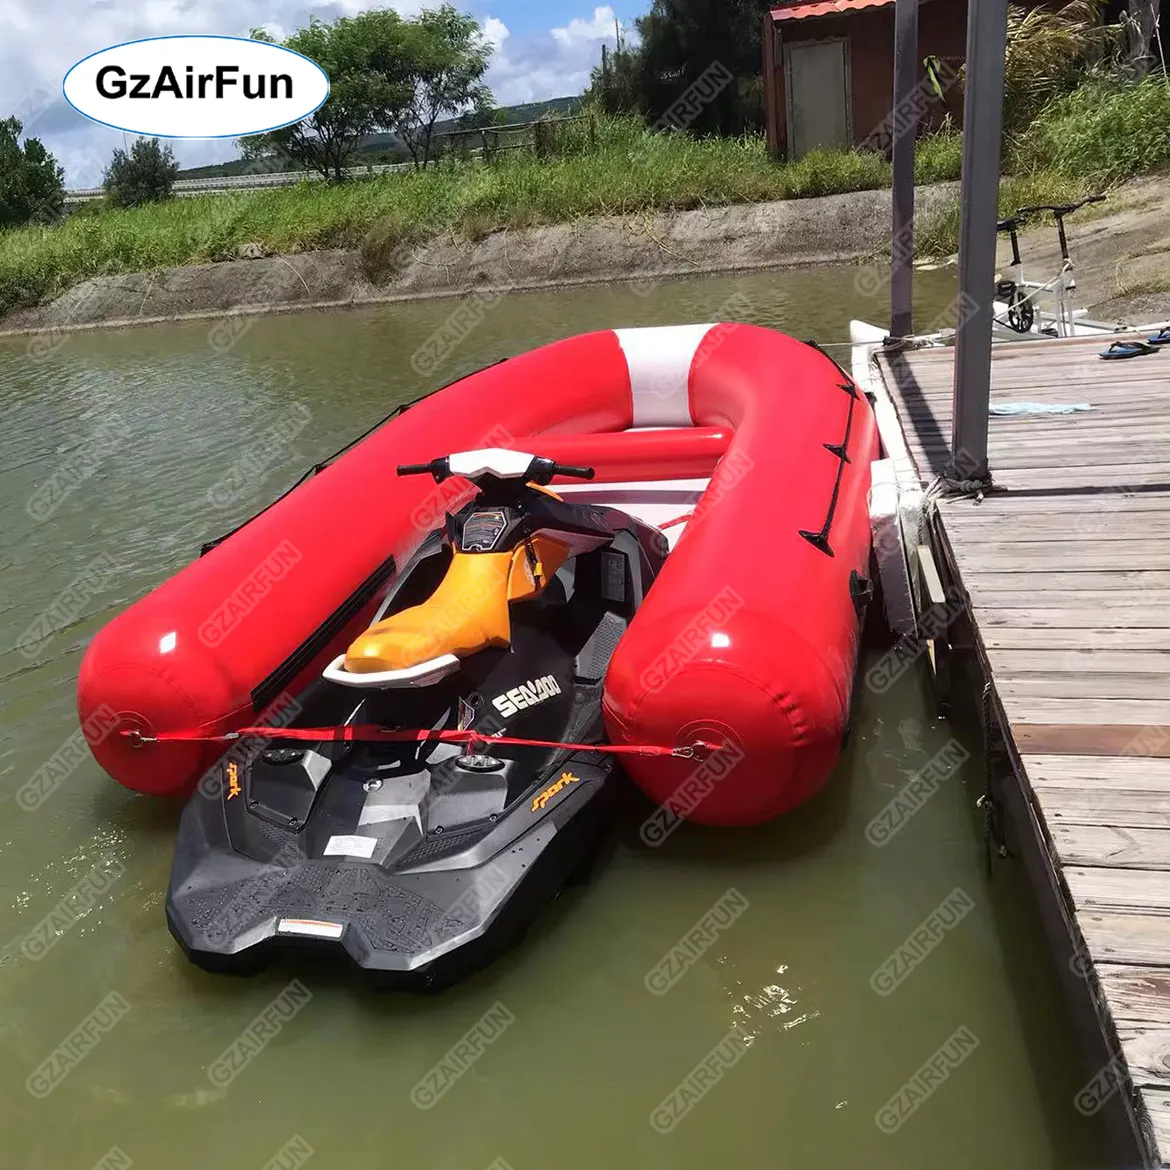 नई डिजाइन jetski नाव जेट स्की संचालित inflatable निविदा घोला जा सकता है पर एक दक्ष के लिए inflatable नाव के साथ एक जेट स्की पानी यात्रा